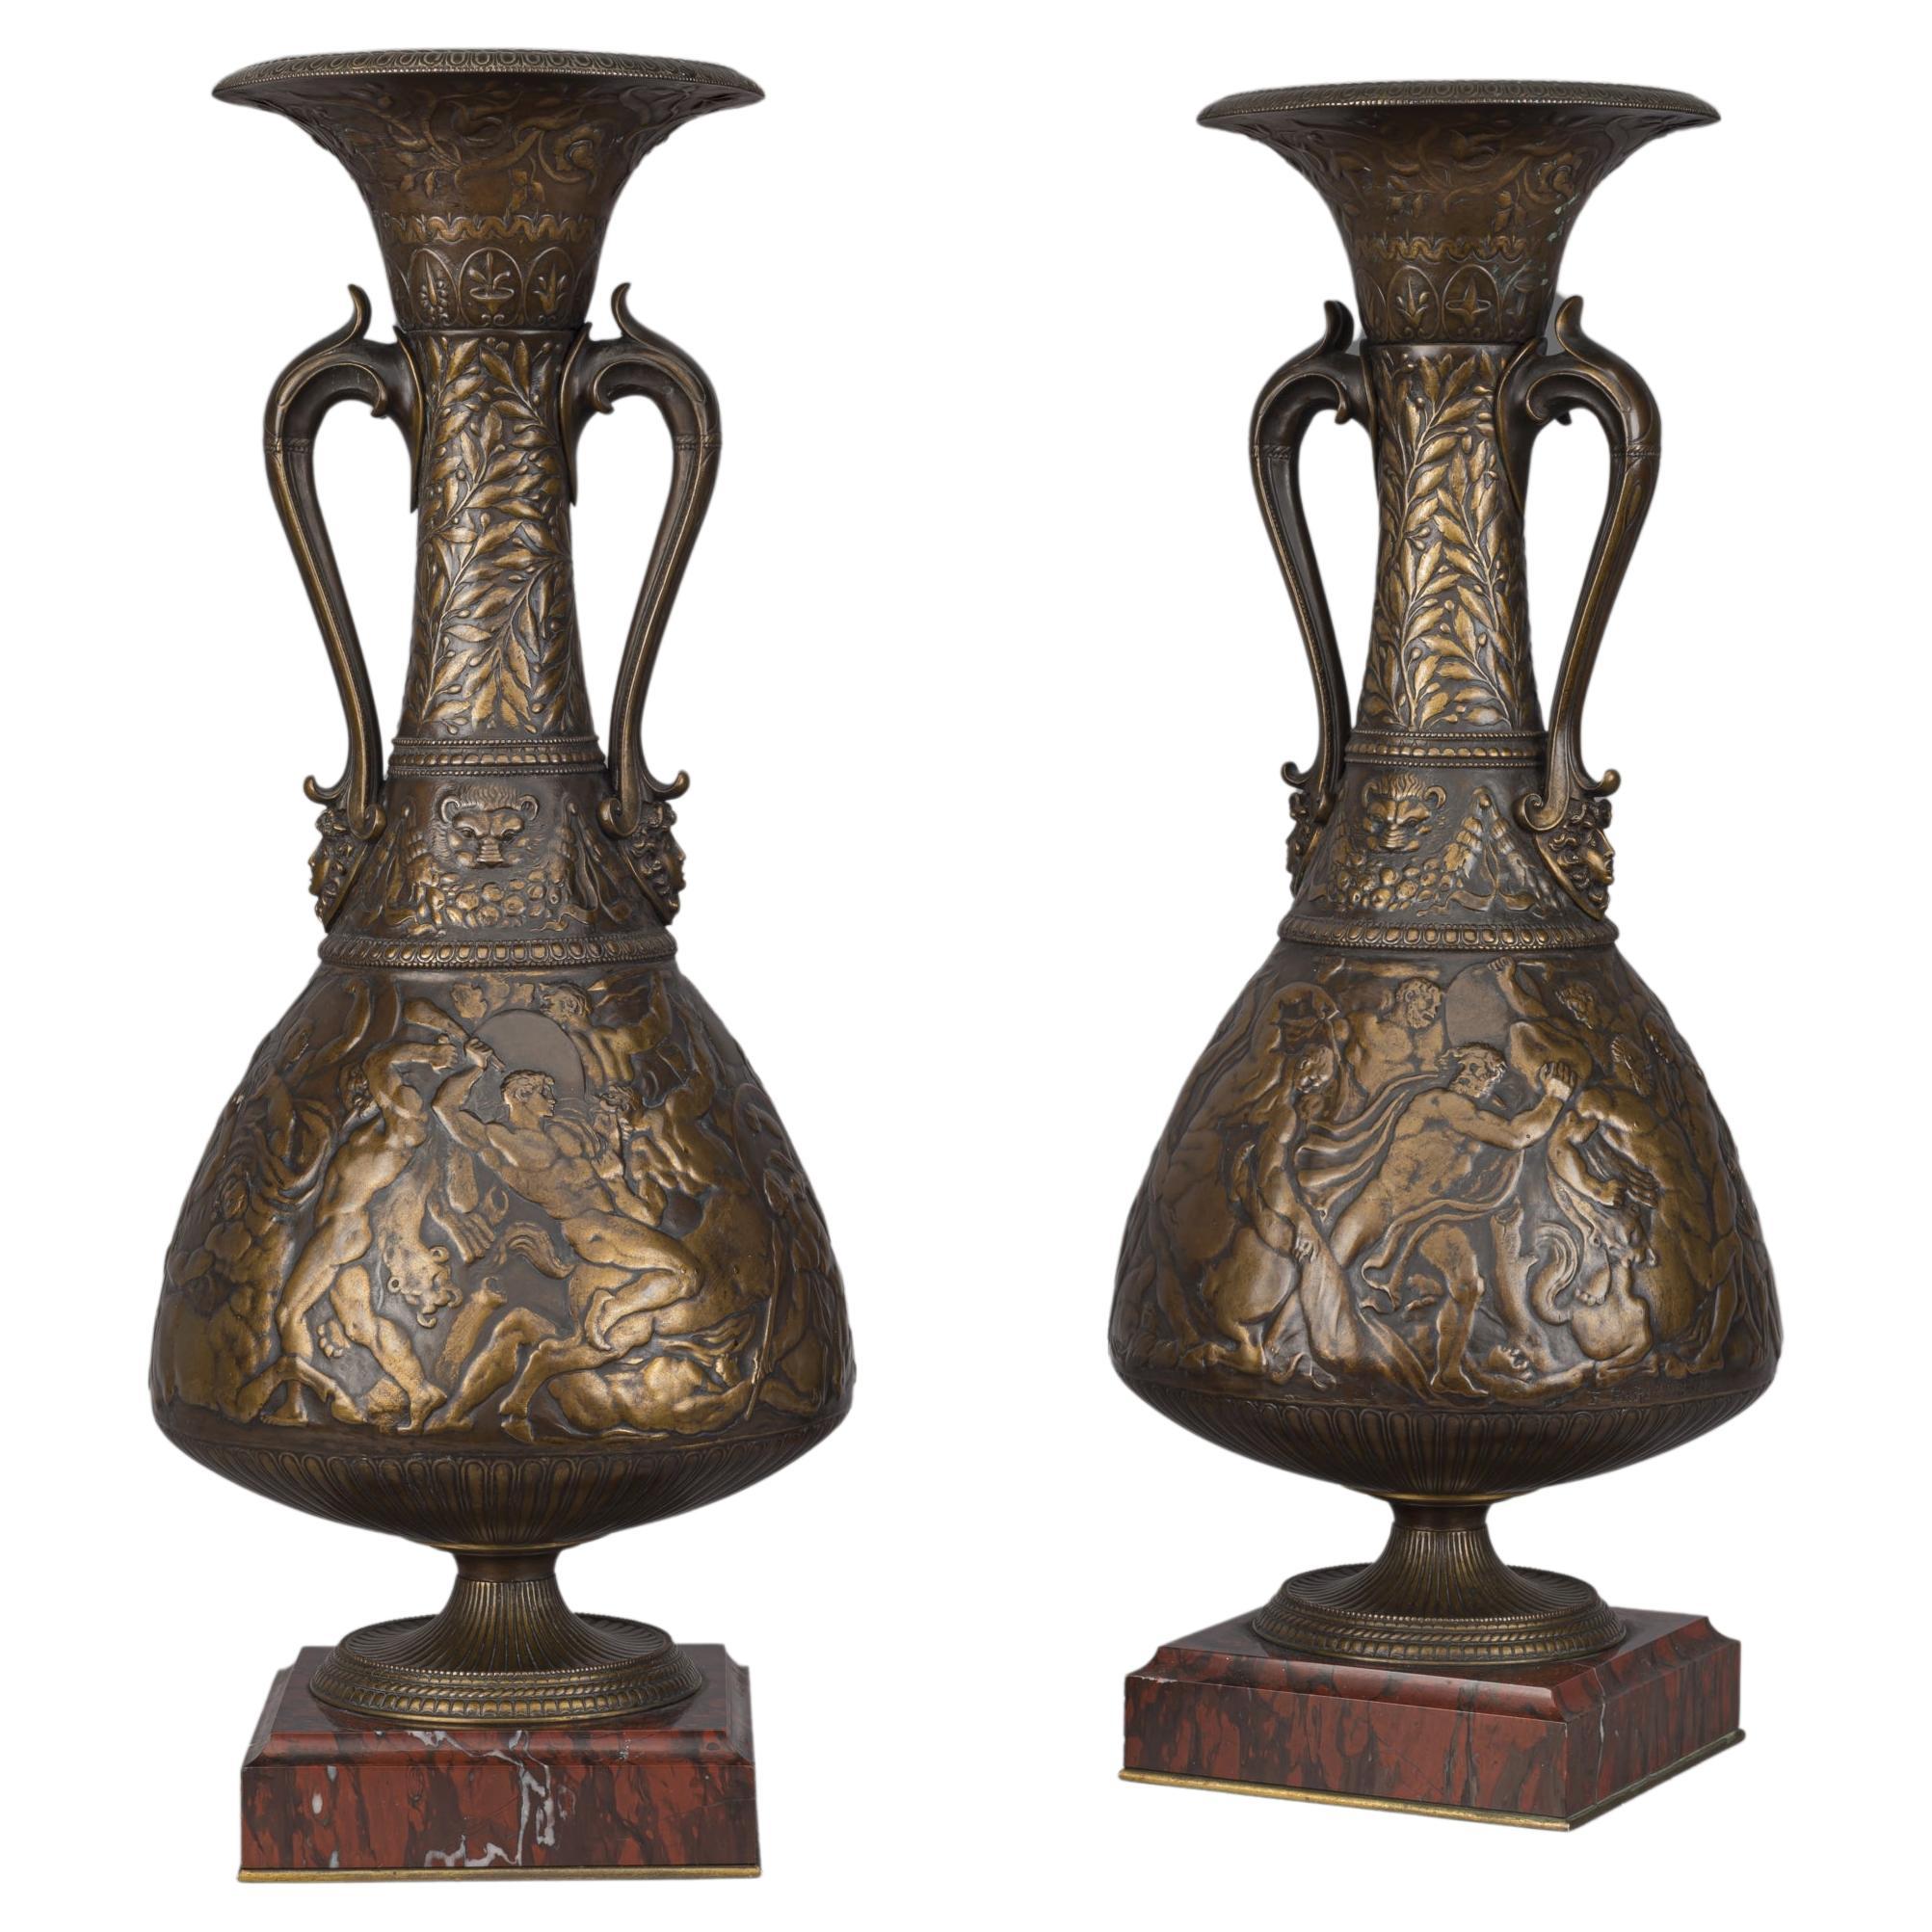 Paire de vases Amphora en bronze multipatiné de style néo-grec 